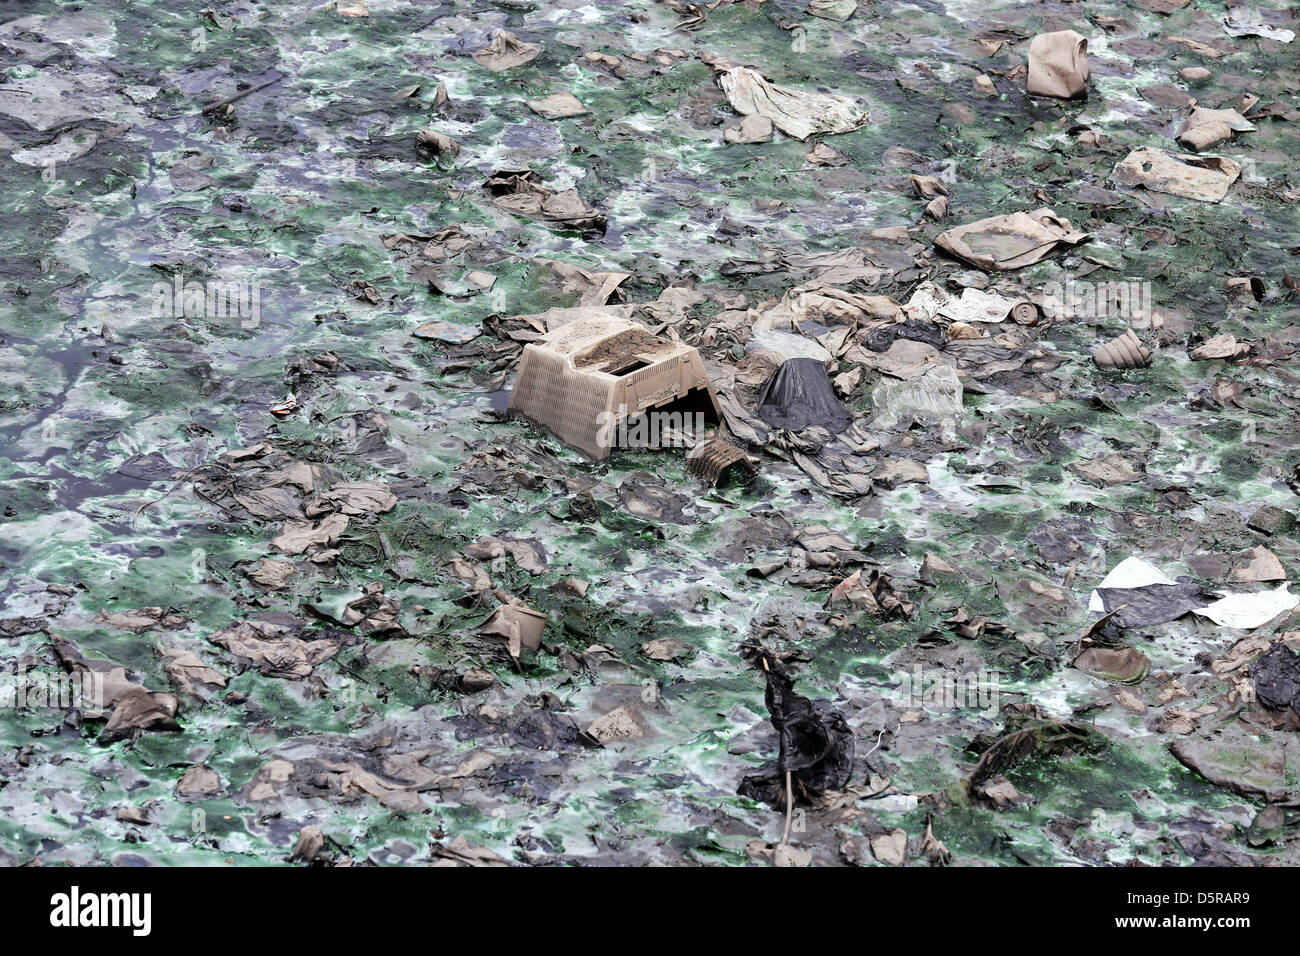 Los monitores de ordenador, e-basura y otros desechos vertidos en las aguas de una laguna en Accra, Ghana Foto de stock